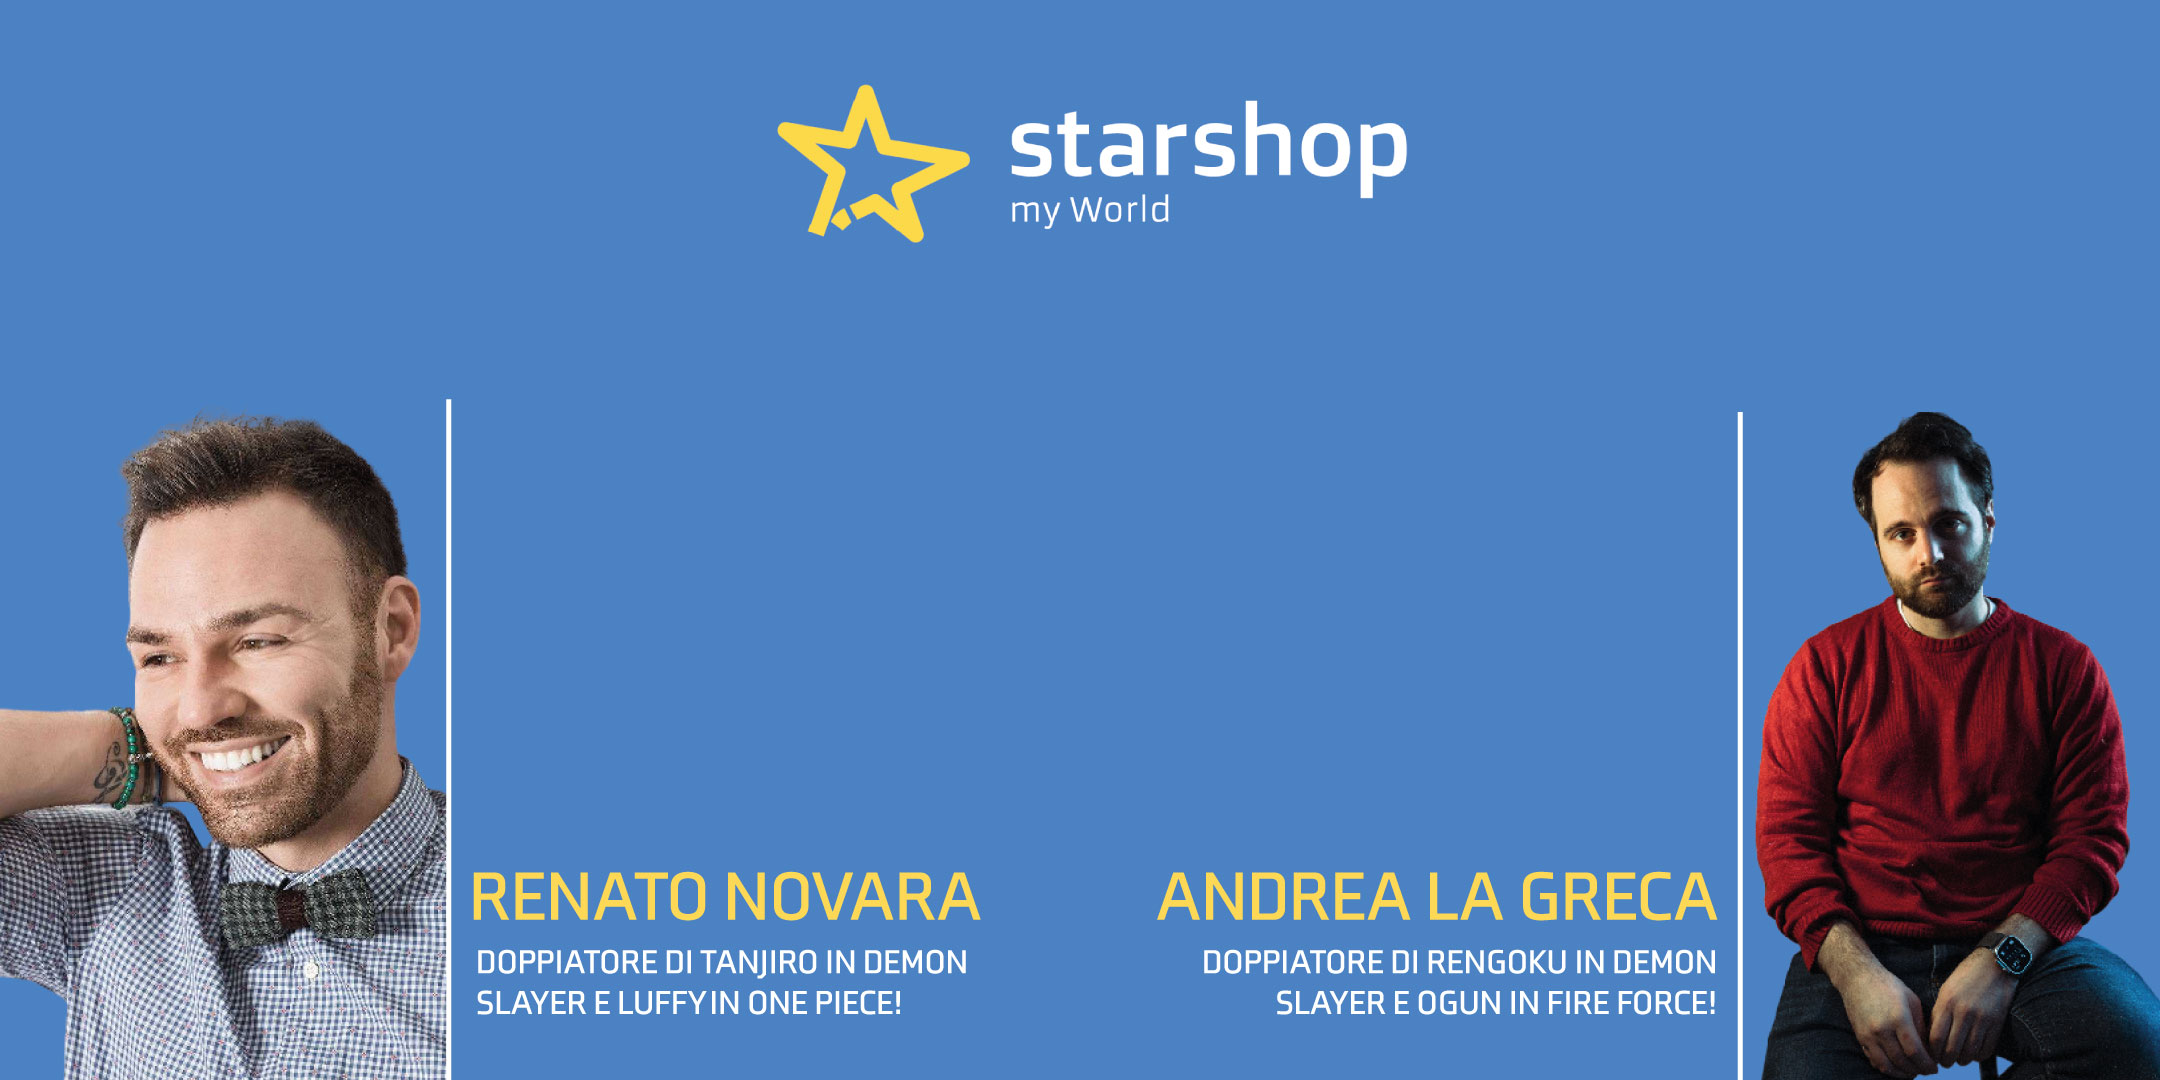 Star Shop My World una nuova apertura a Reggio Emilia!